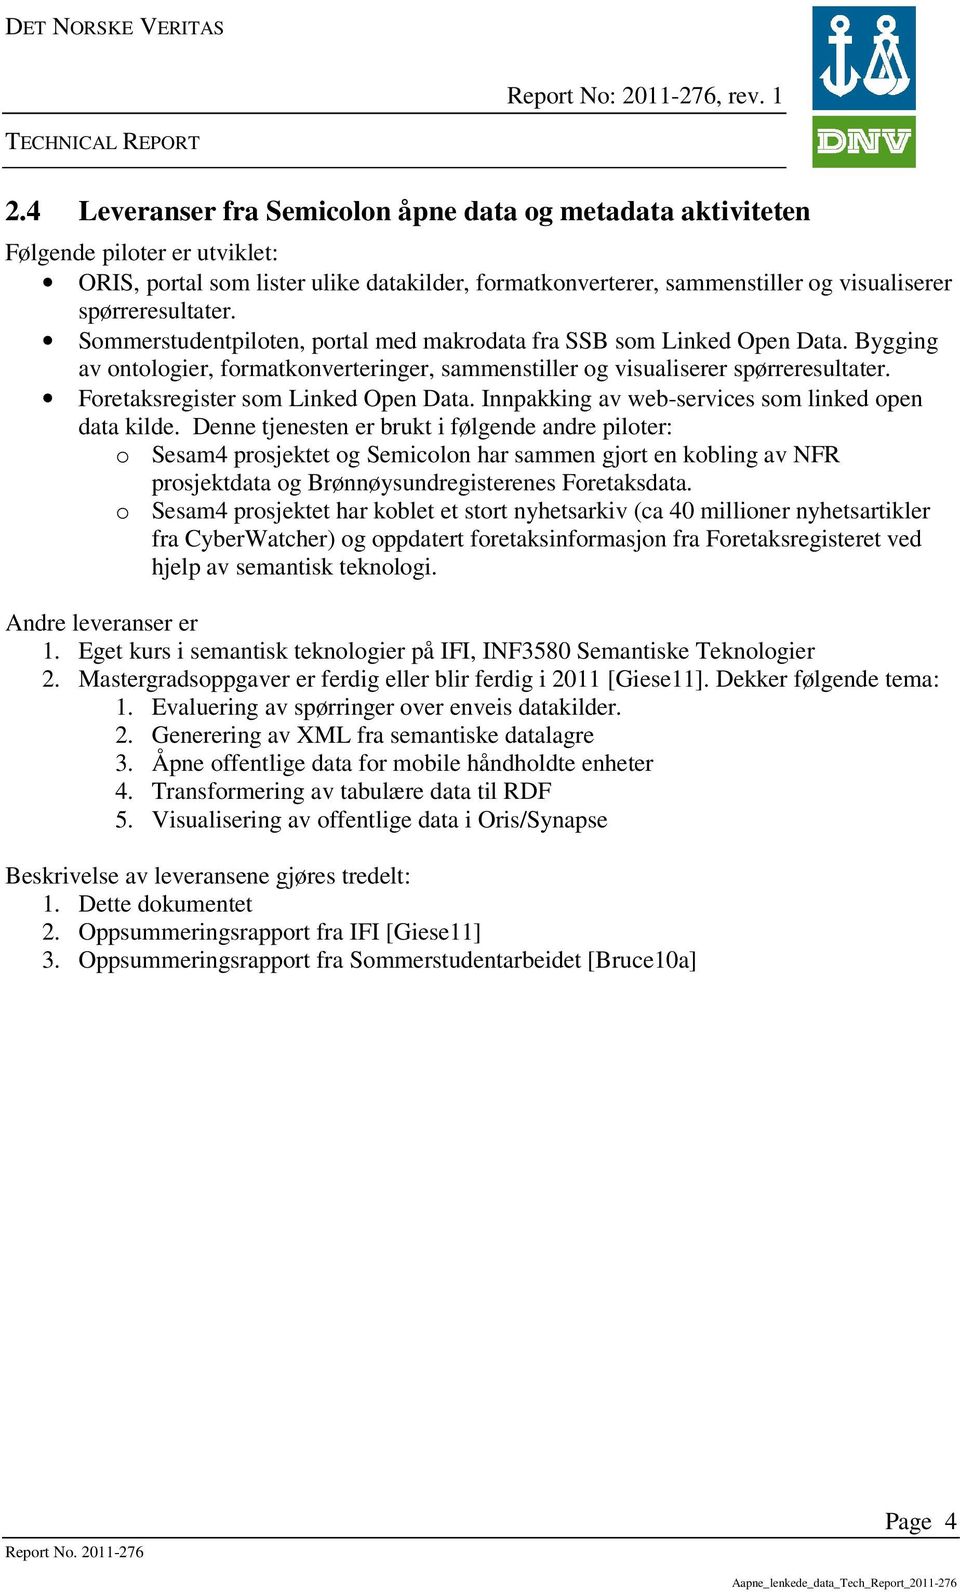 Foretaksregister som Linked Open Data. Innpakking av web-services som linked open data kilde.